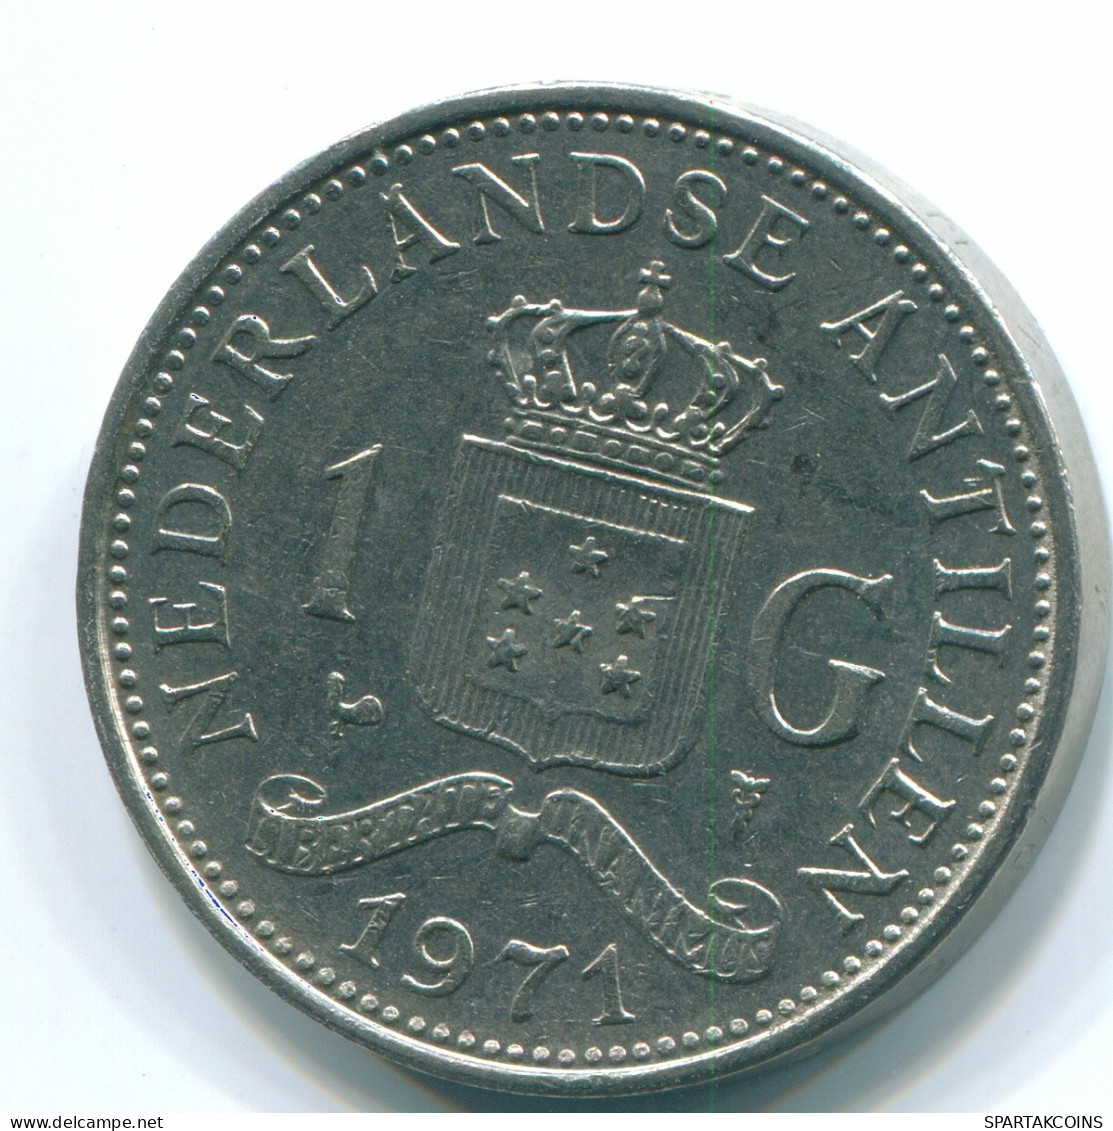 1 GULDEN 1971 NIEDERLÄNDISCHE ANTILLEN Nickel Koloniale Münze #S12025.D.A - Netherlands Antilles